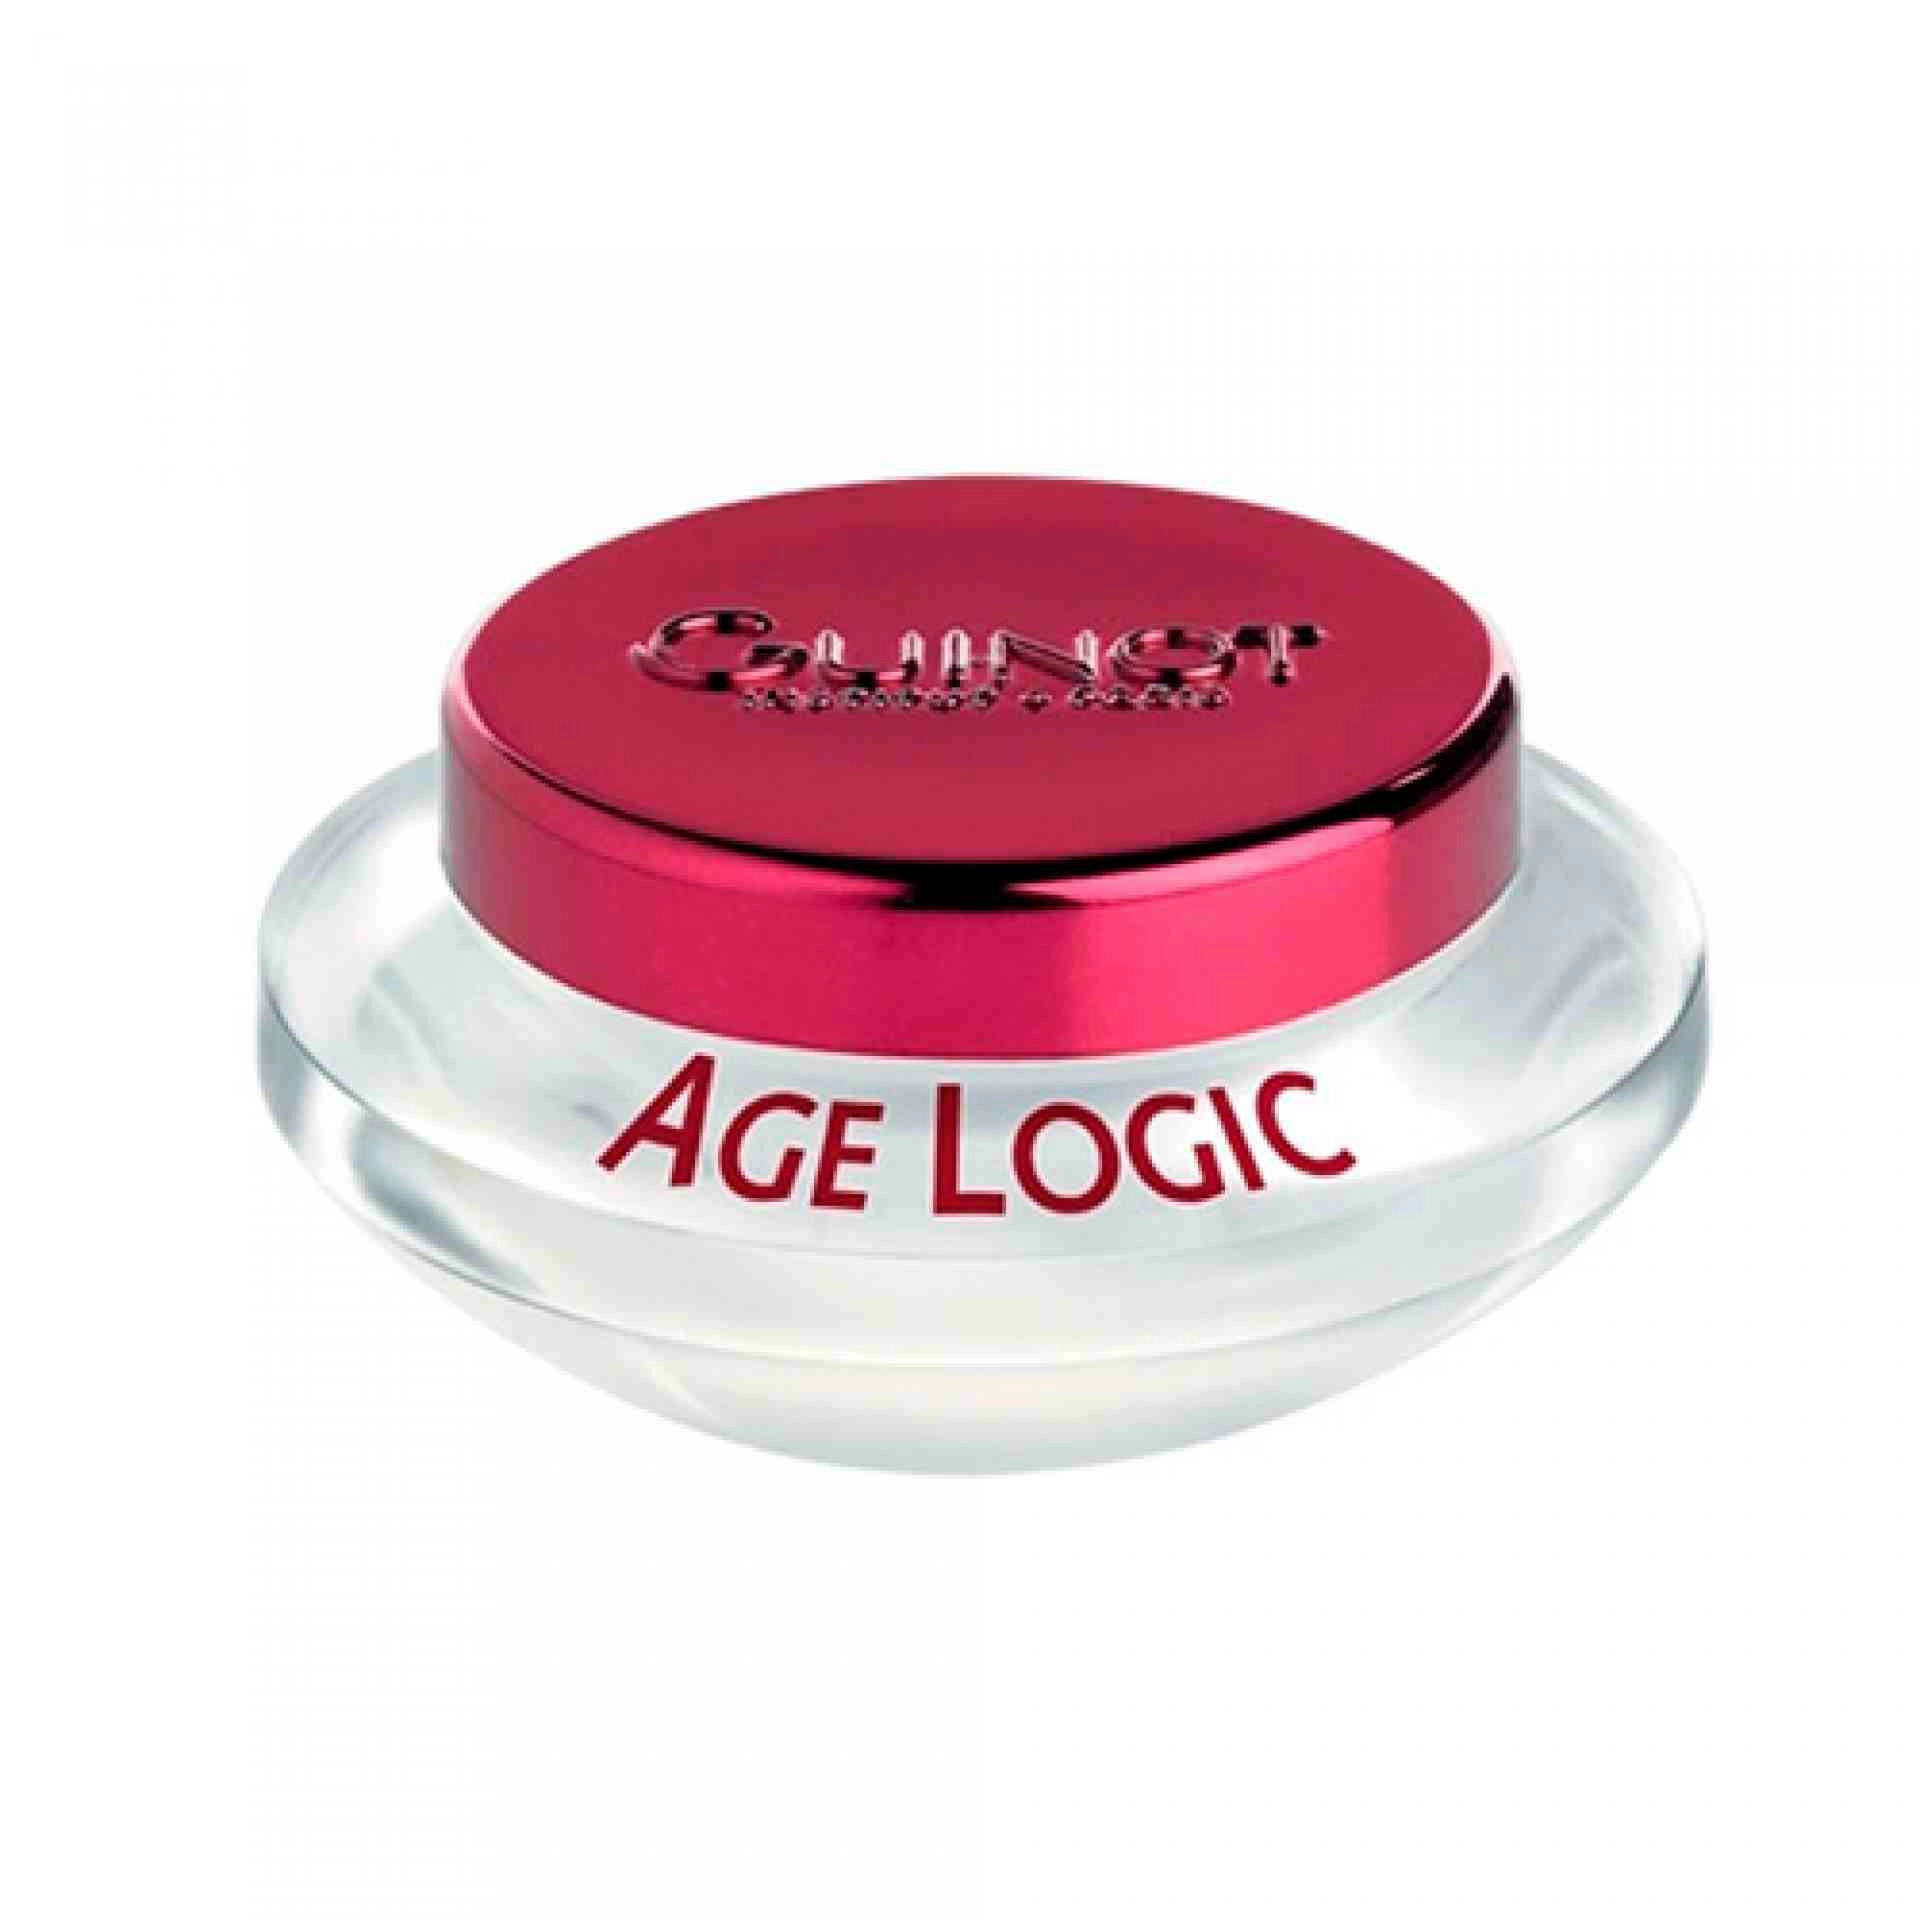 Crème Age Logic | Crema Antiedad 50ml - Guinot ®